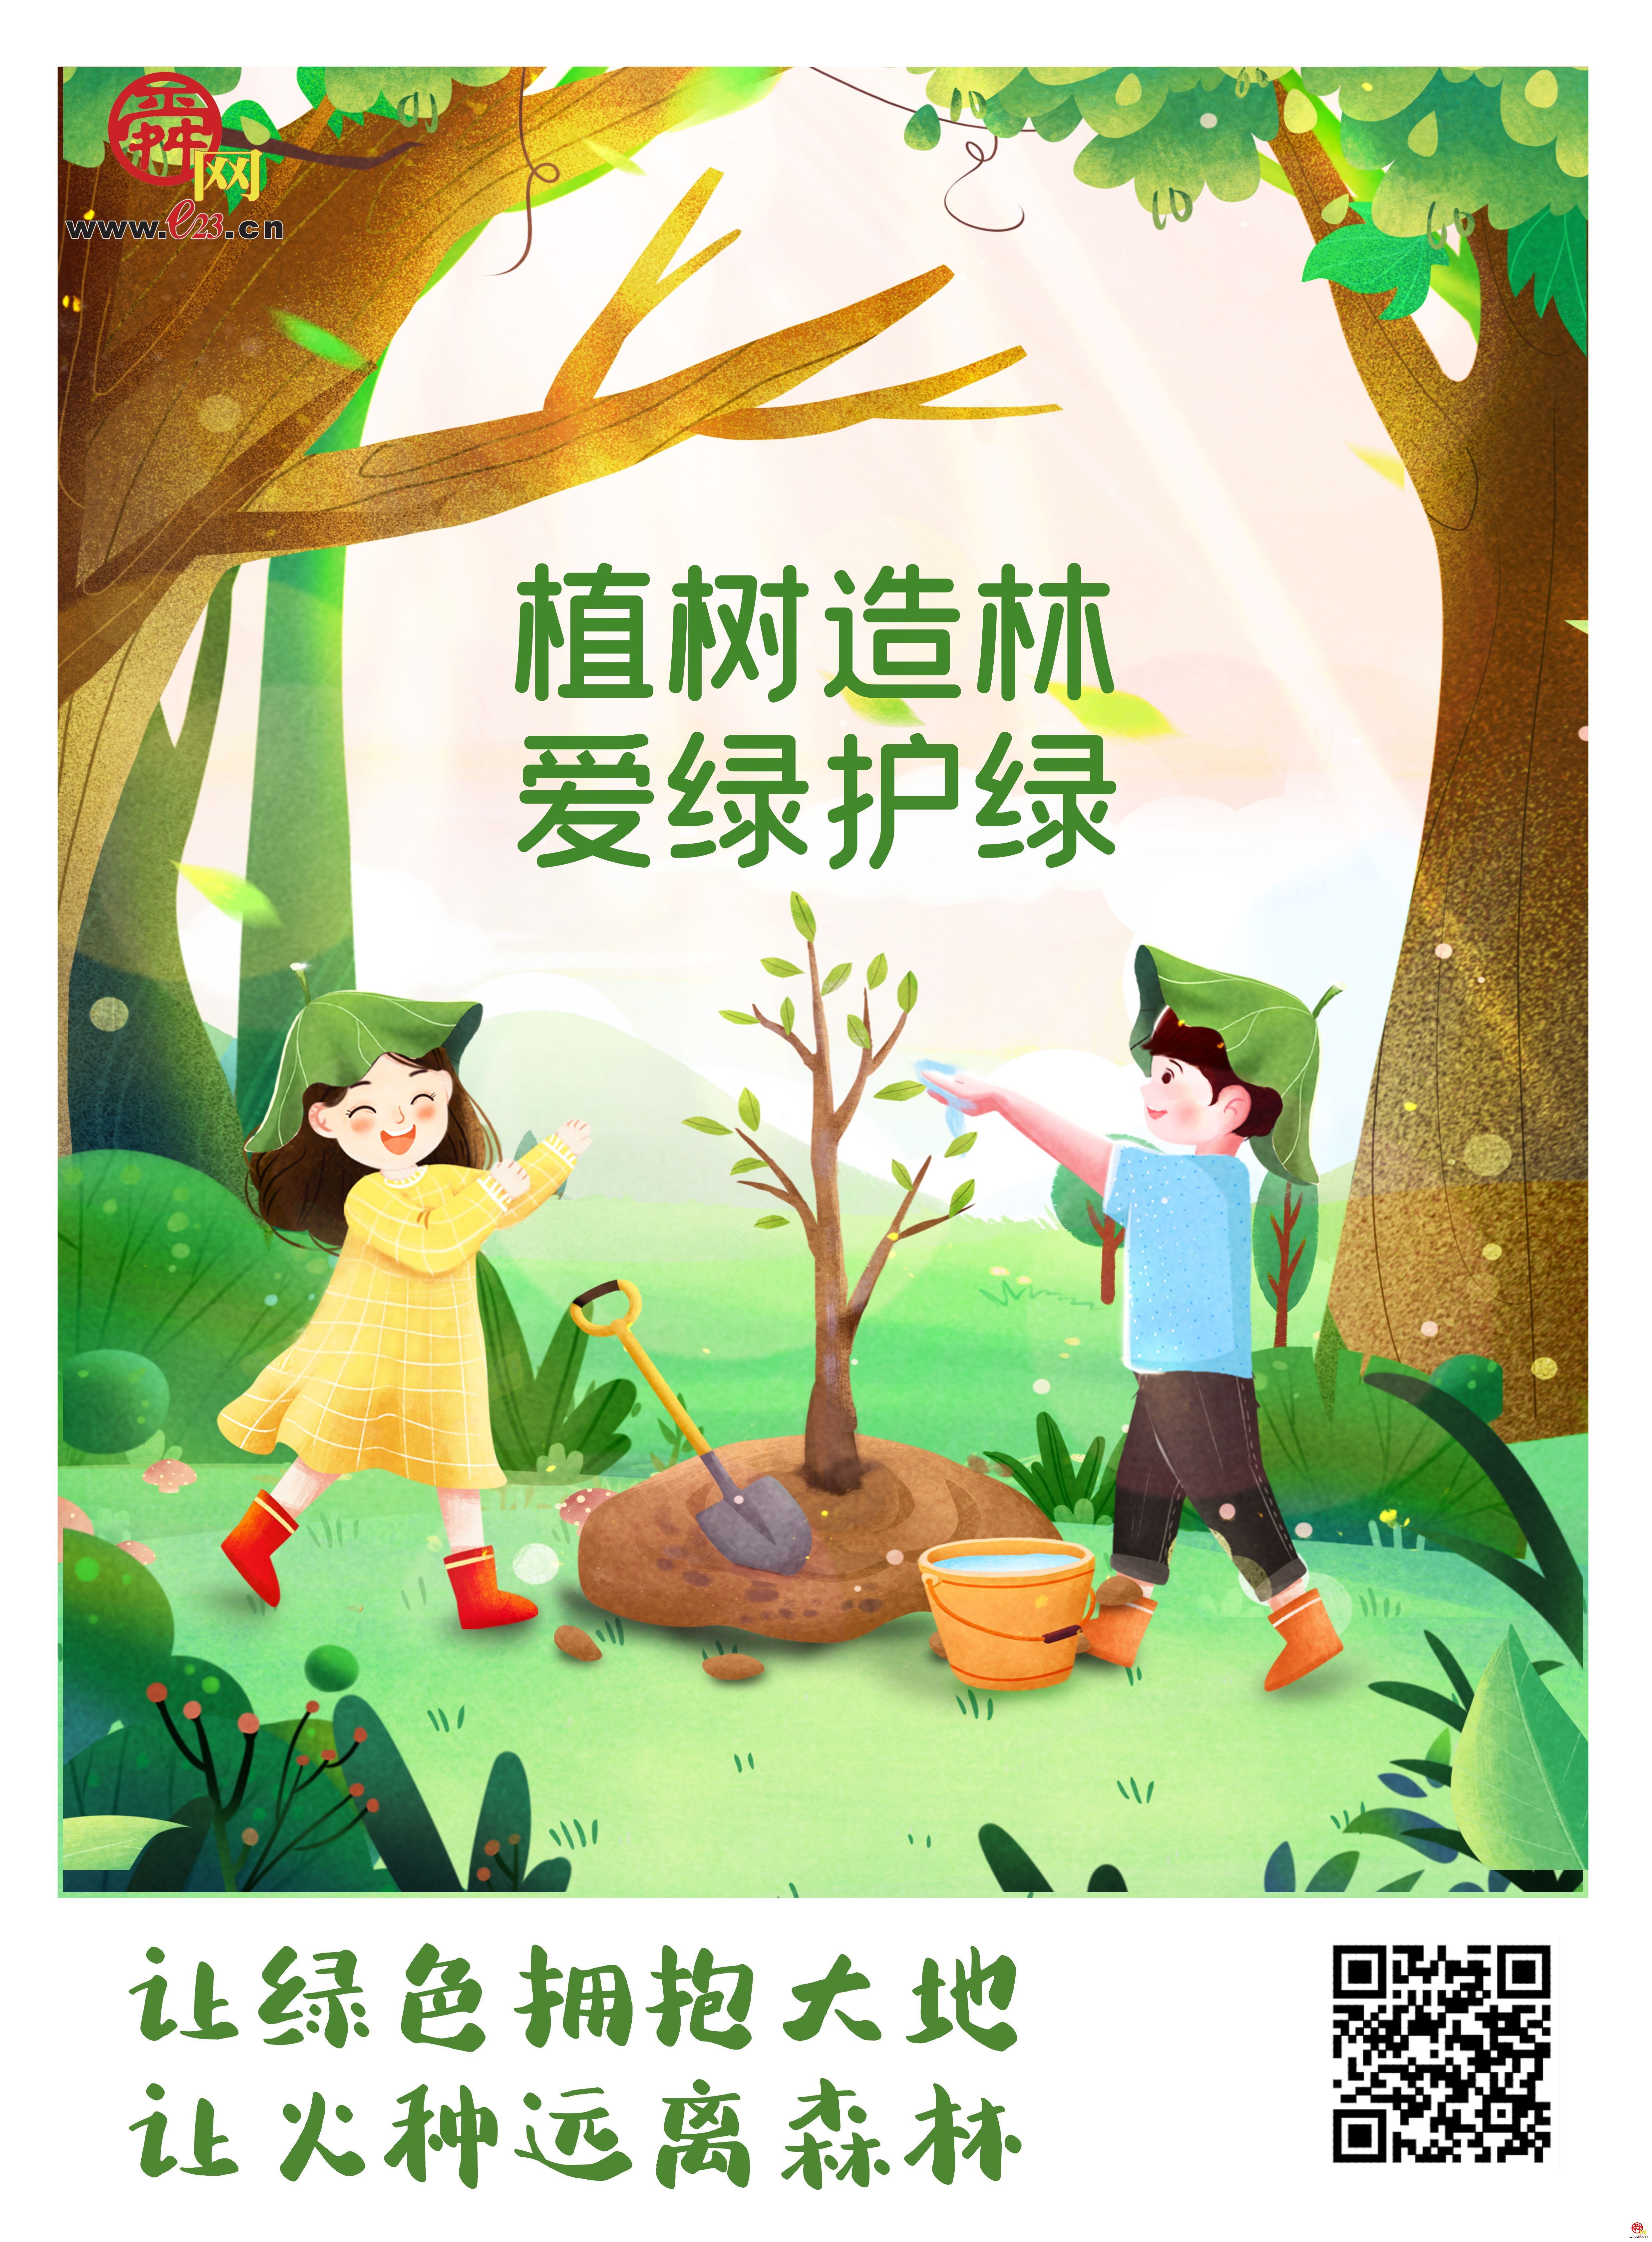 附:济南市2022年全民义务植树活动地点原标题:植树节